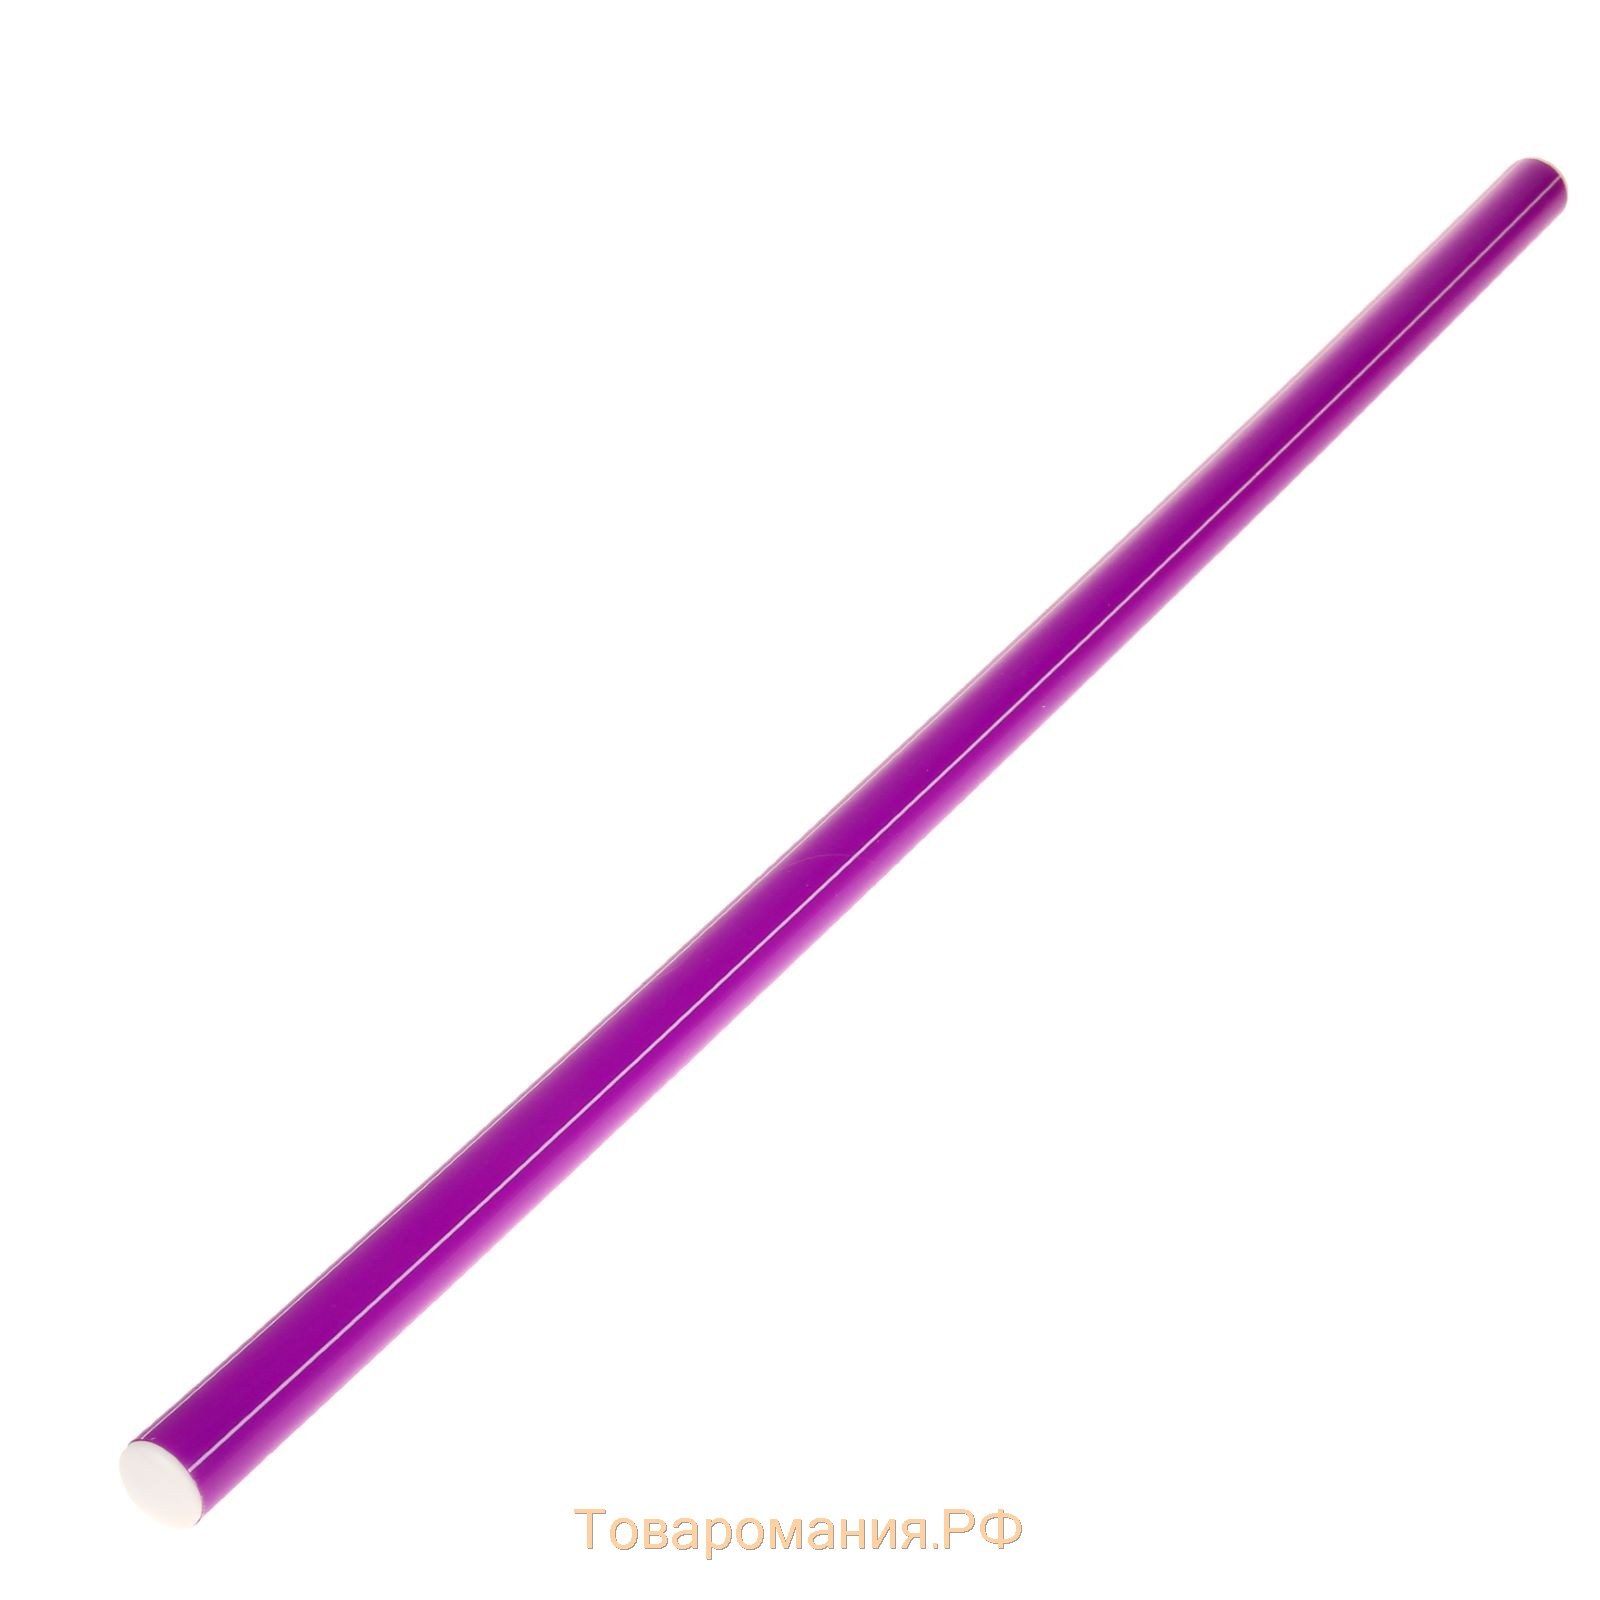 Палка гимнастическая 70 см, цвет фиолетовый